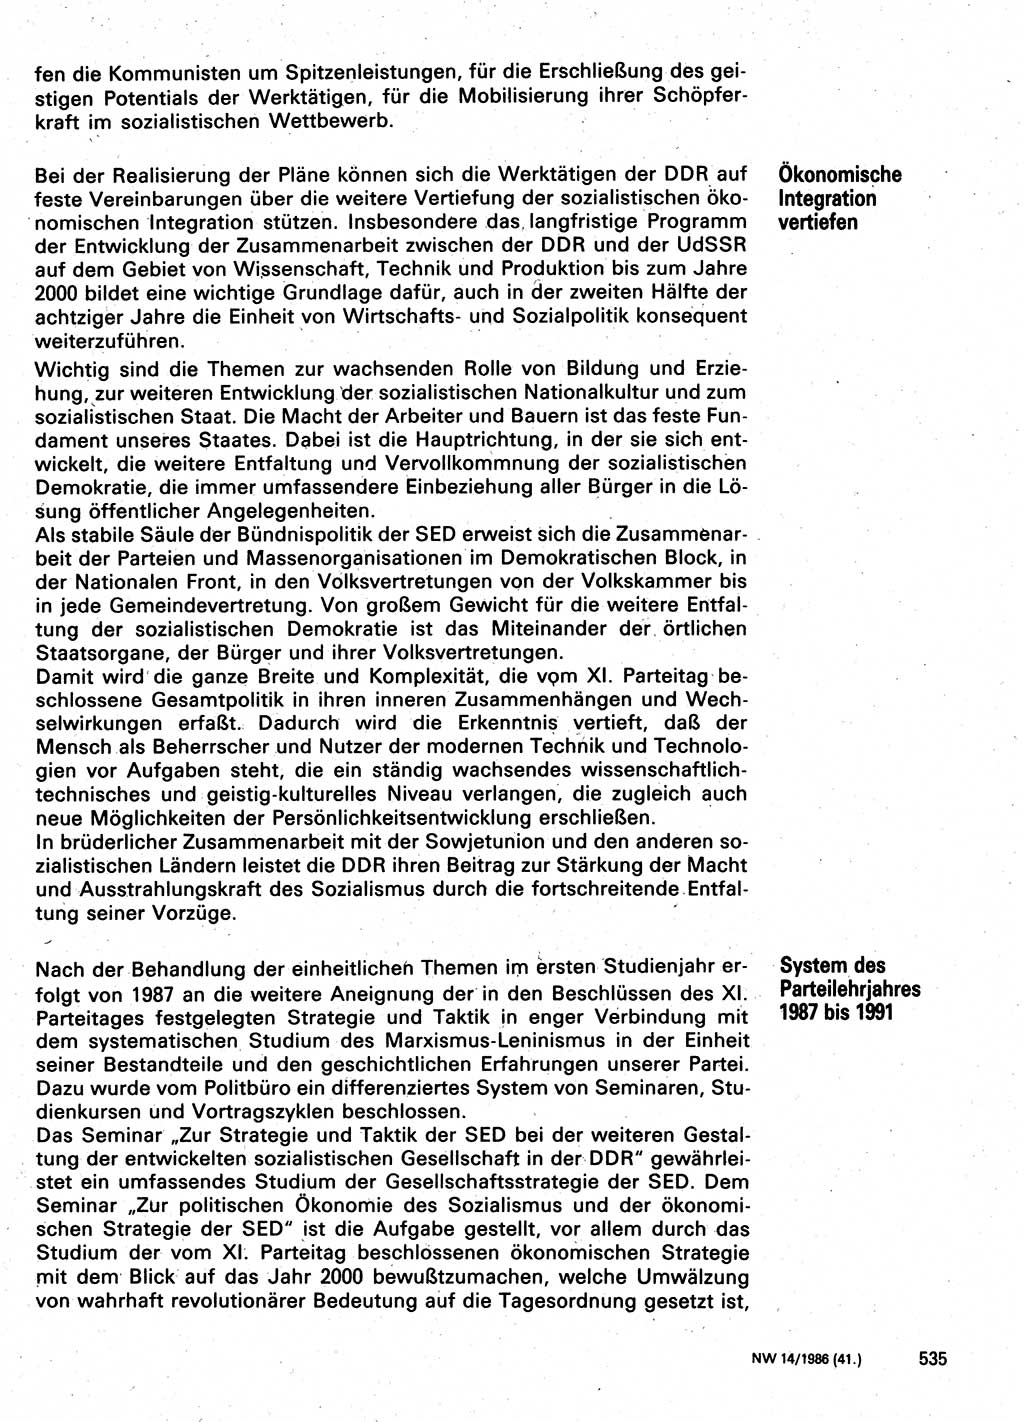 Neuer Weg (NW), Organ des Zentralkomitees (ZK) der SED (Sozialistische Einheitspartei Deutschlands) für Fragen des Parteilebens, 41. Jahrgang [Deutsche Demokratische Republik (DDR)] 1986, Seite 535 (NW ZK SED DDR 1986, S. 535)